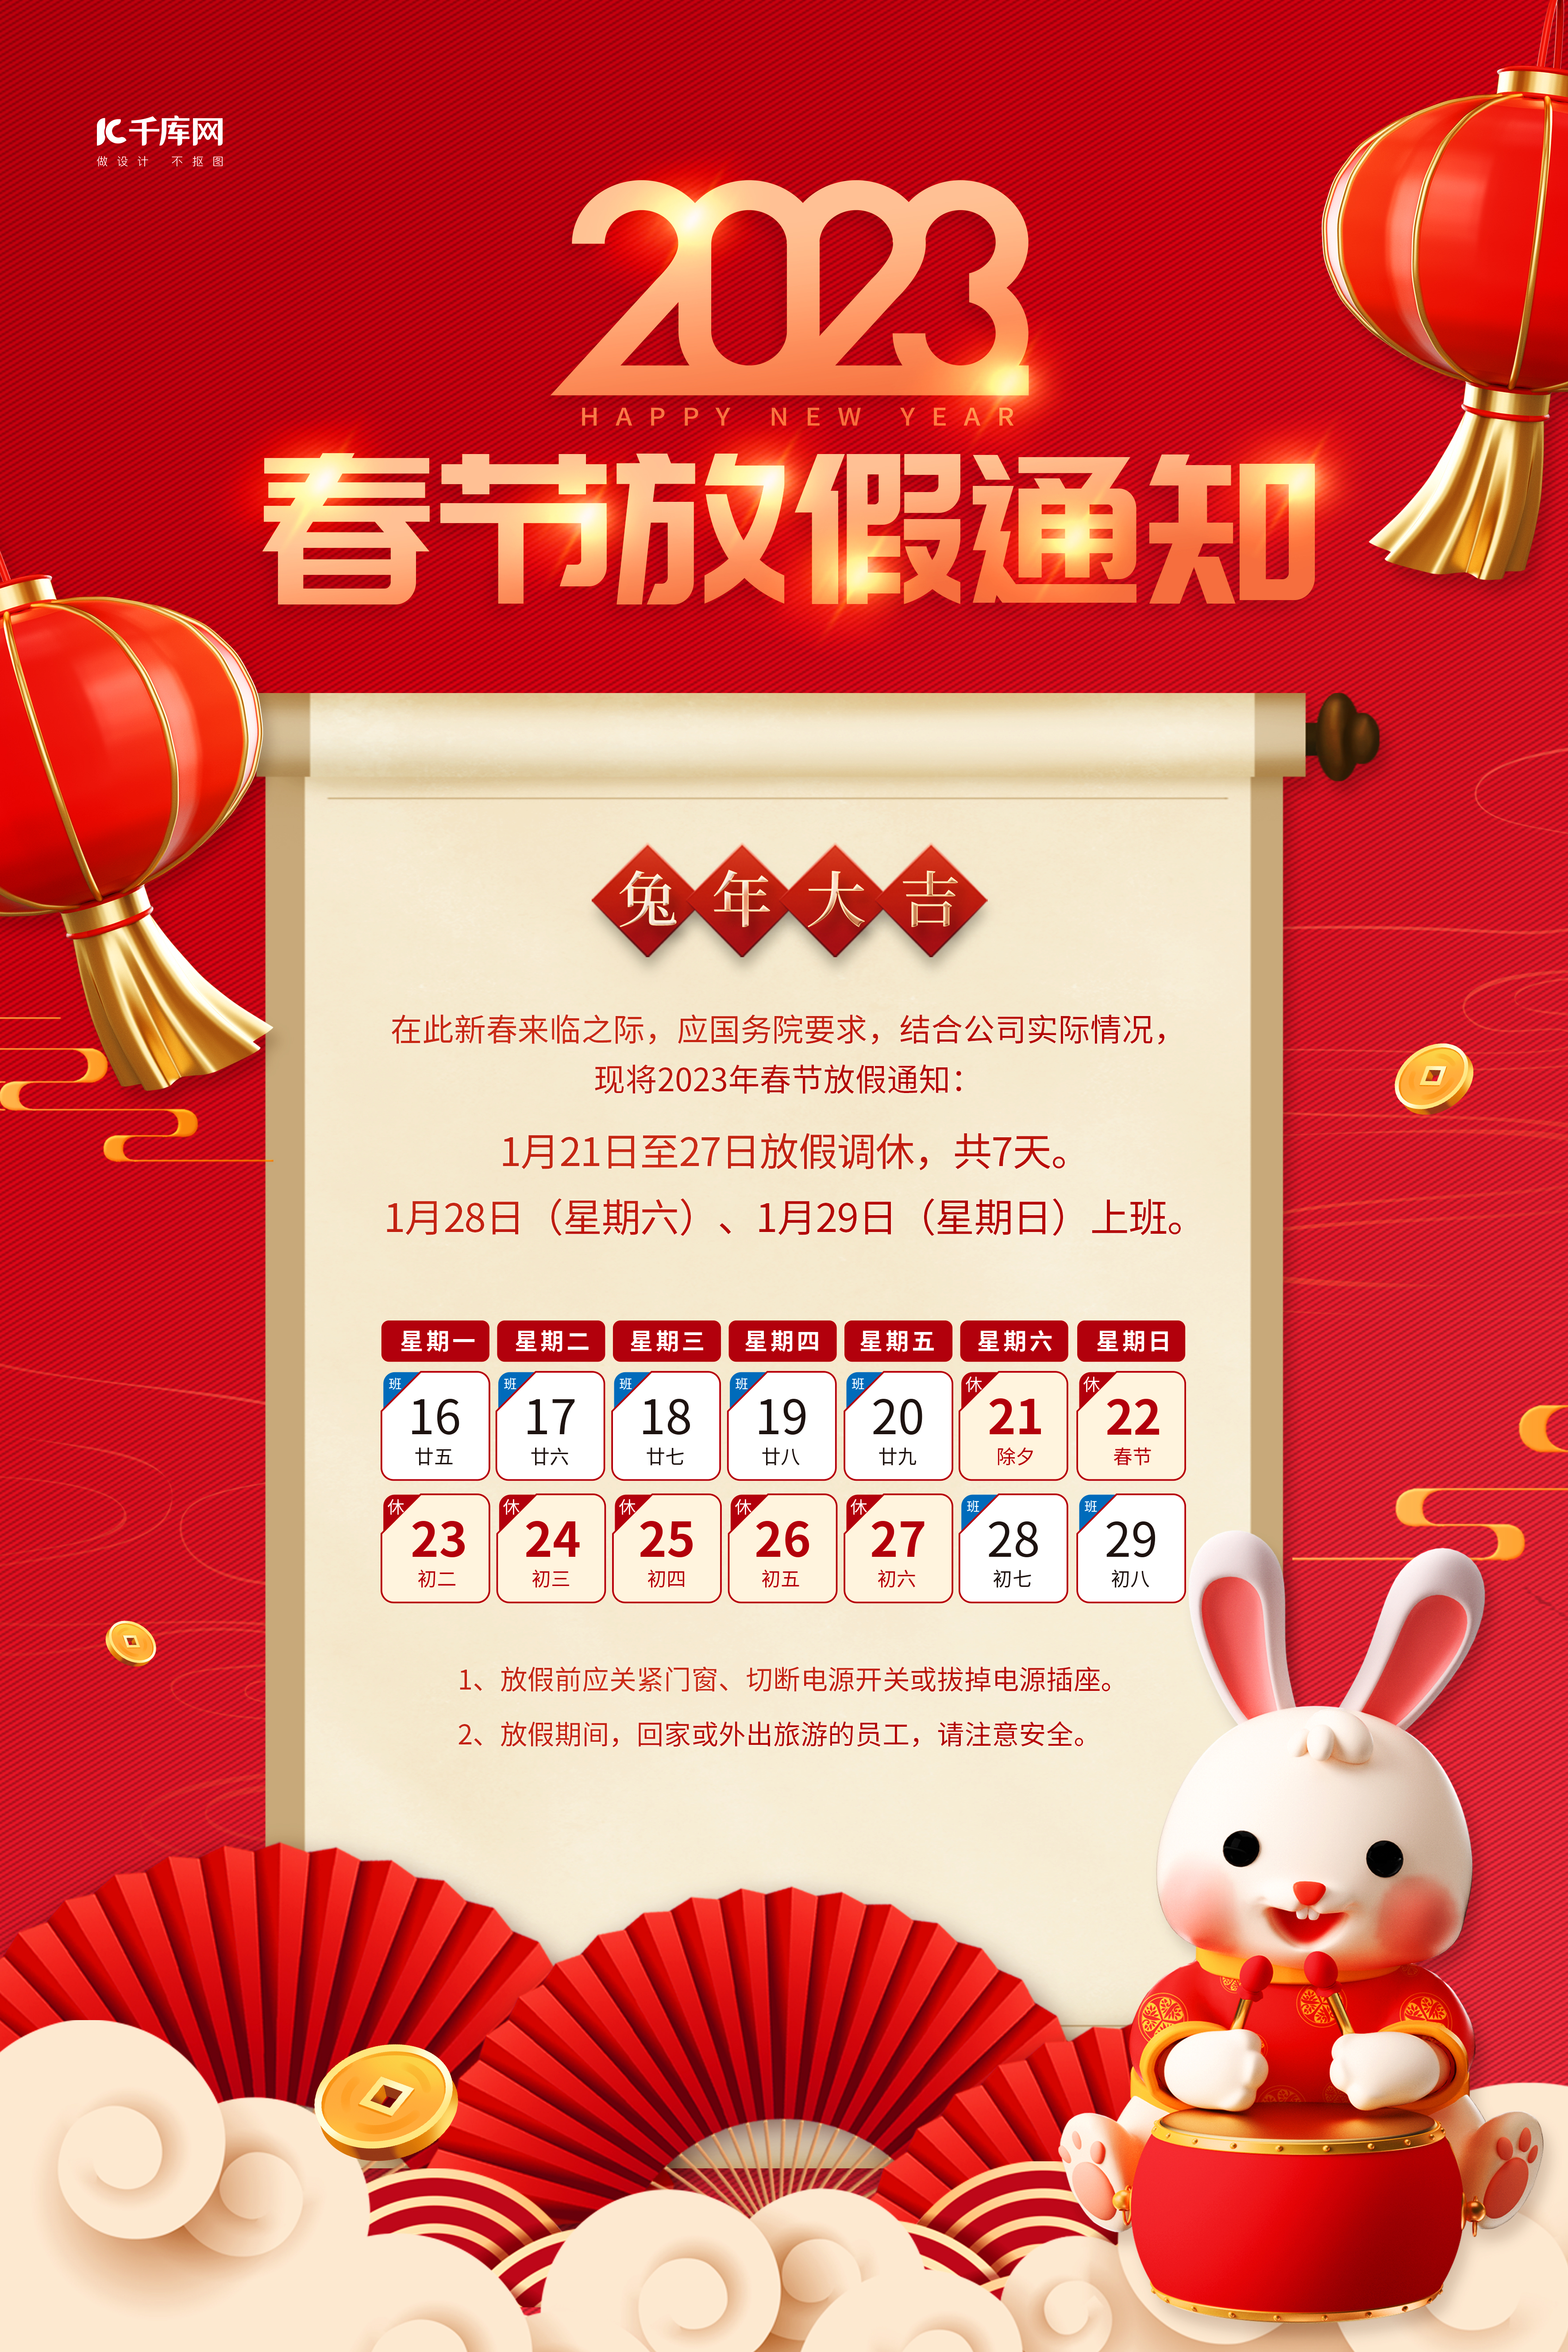 春节放假通知3D灯笼兔子卷轴素材红色创意海报图片